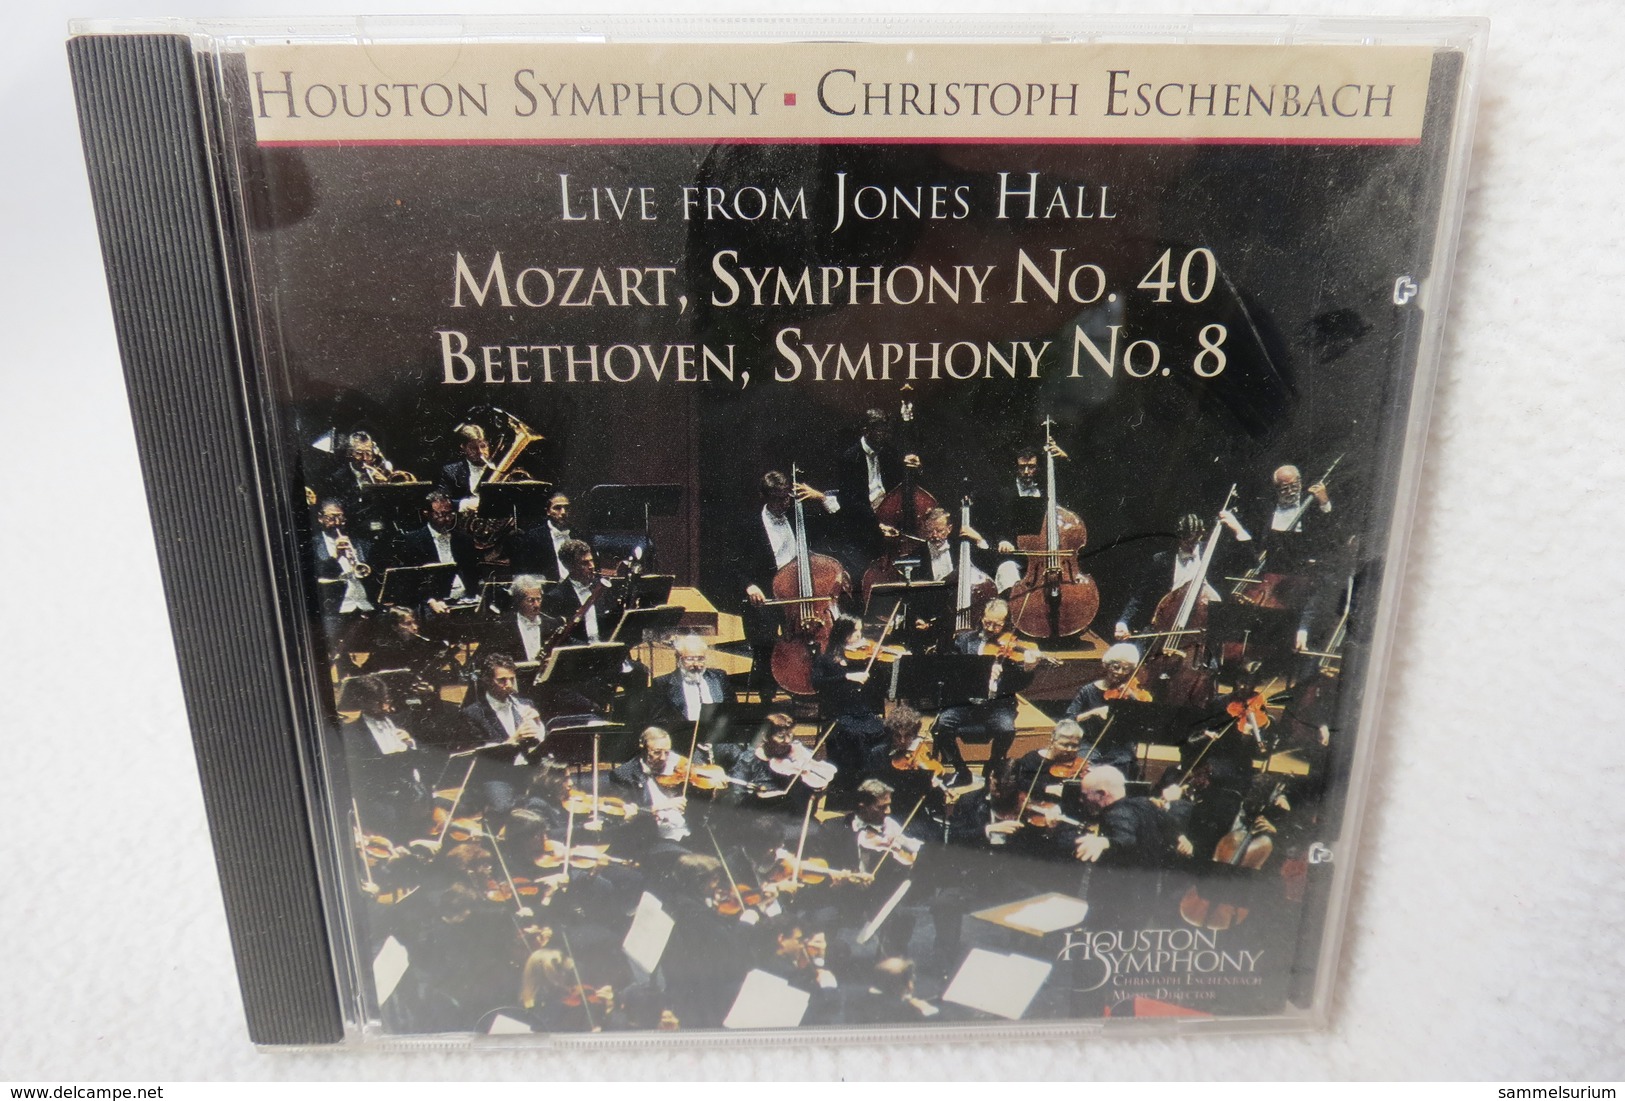 CD "Houston Symphony / Christoph Eschenbach" Live From Jones Hall, Mozart Symphony No.40, Beethoven Symphony No.8 - Klassik